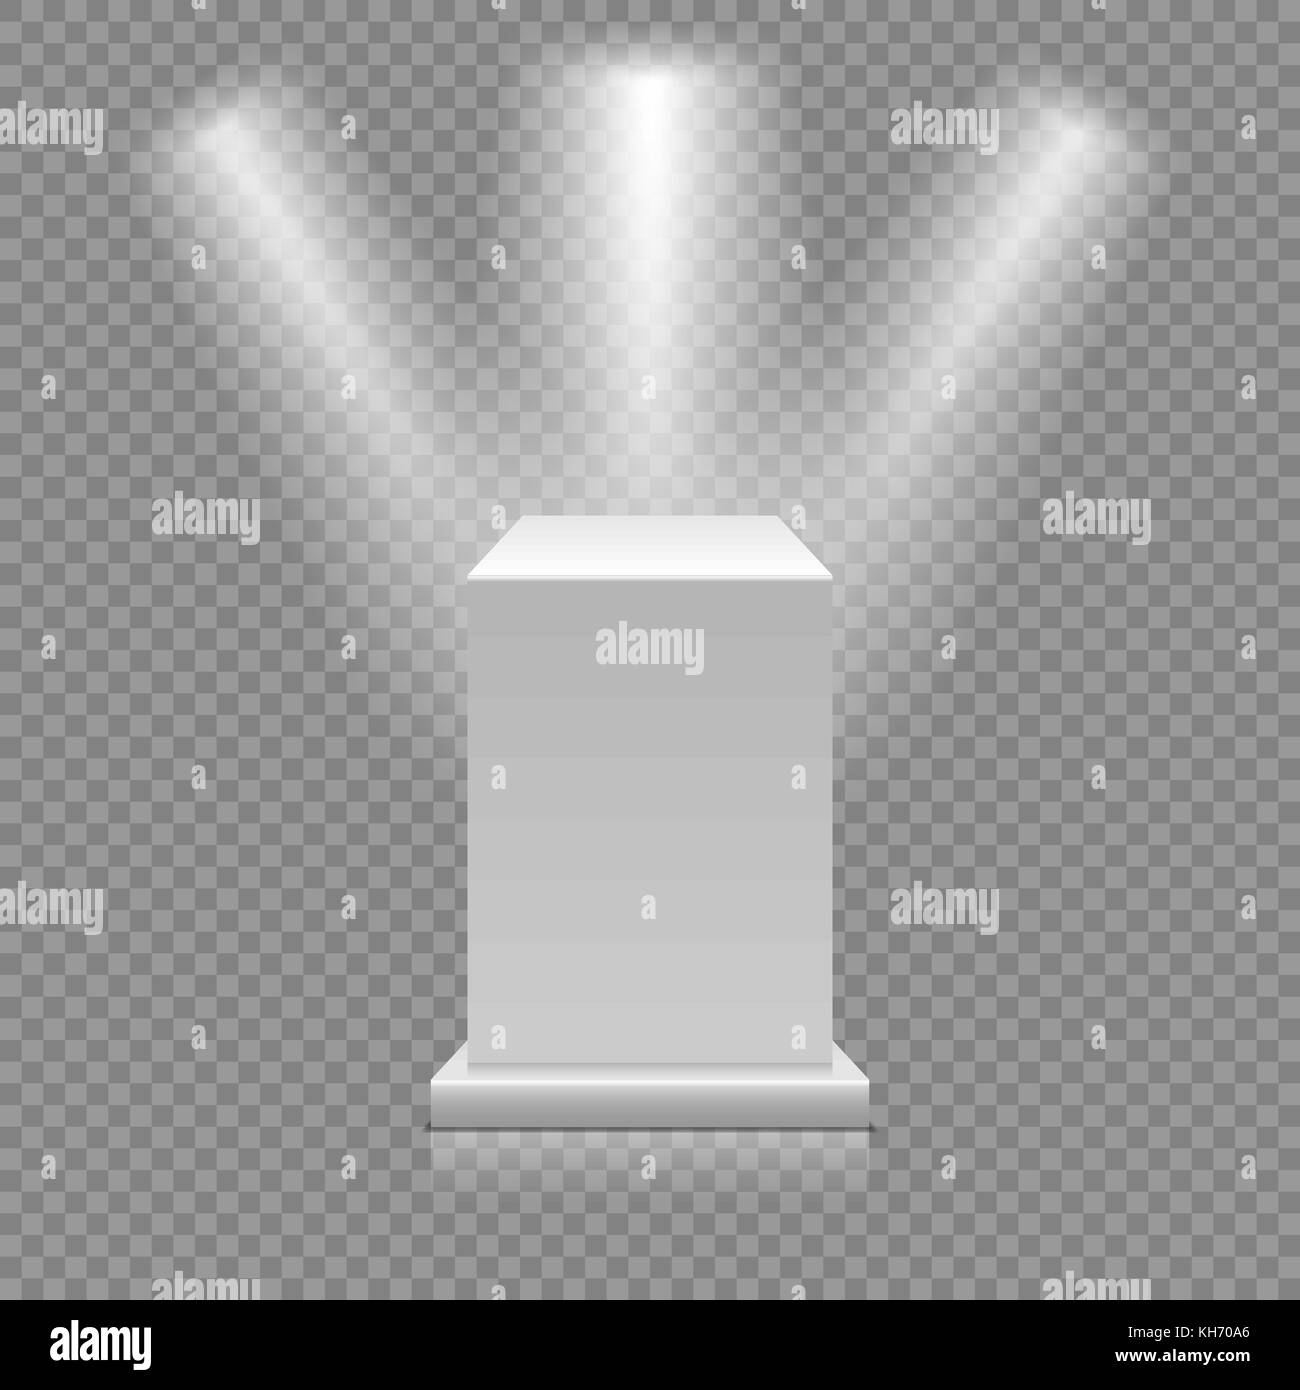 Weiße leere Podium auf transparentem Hintergrund isoliert. Museum Sockel mit Strahlern. 3D-Vektor illustration Stock Vektor